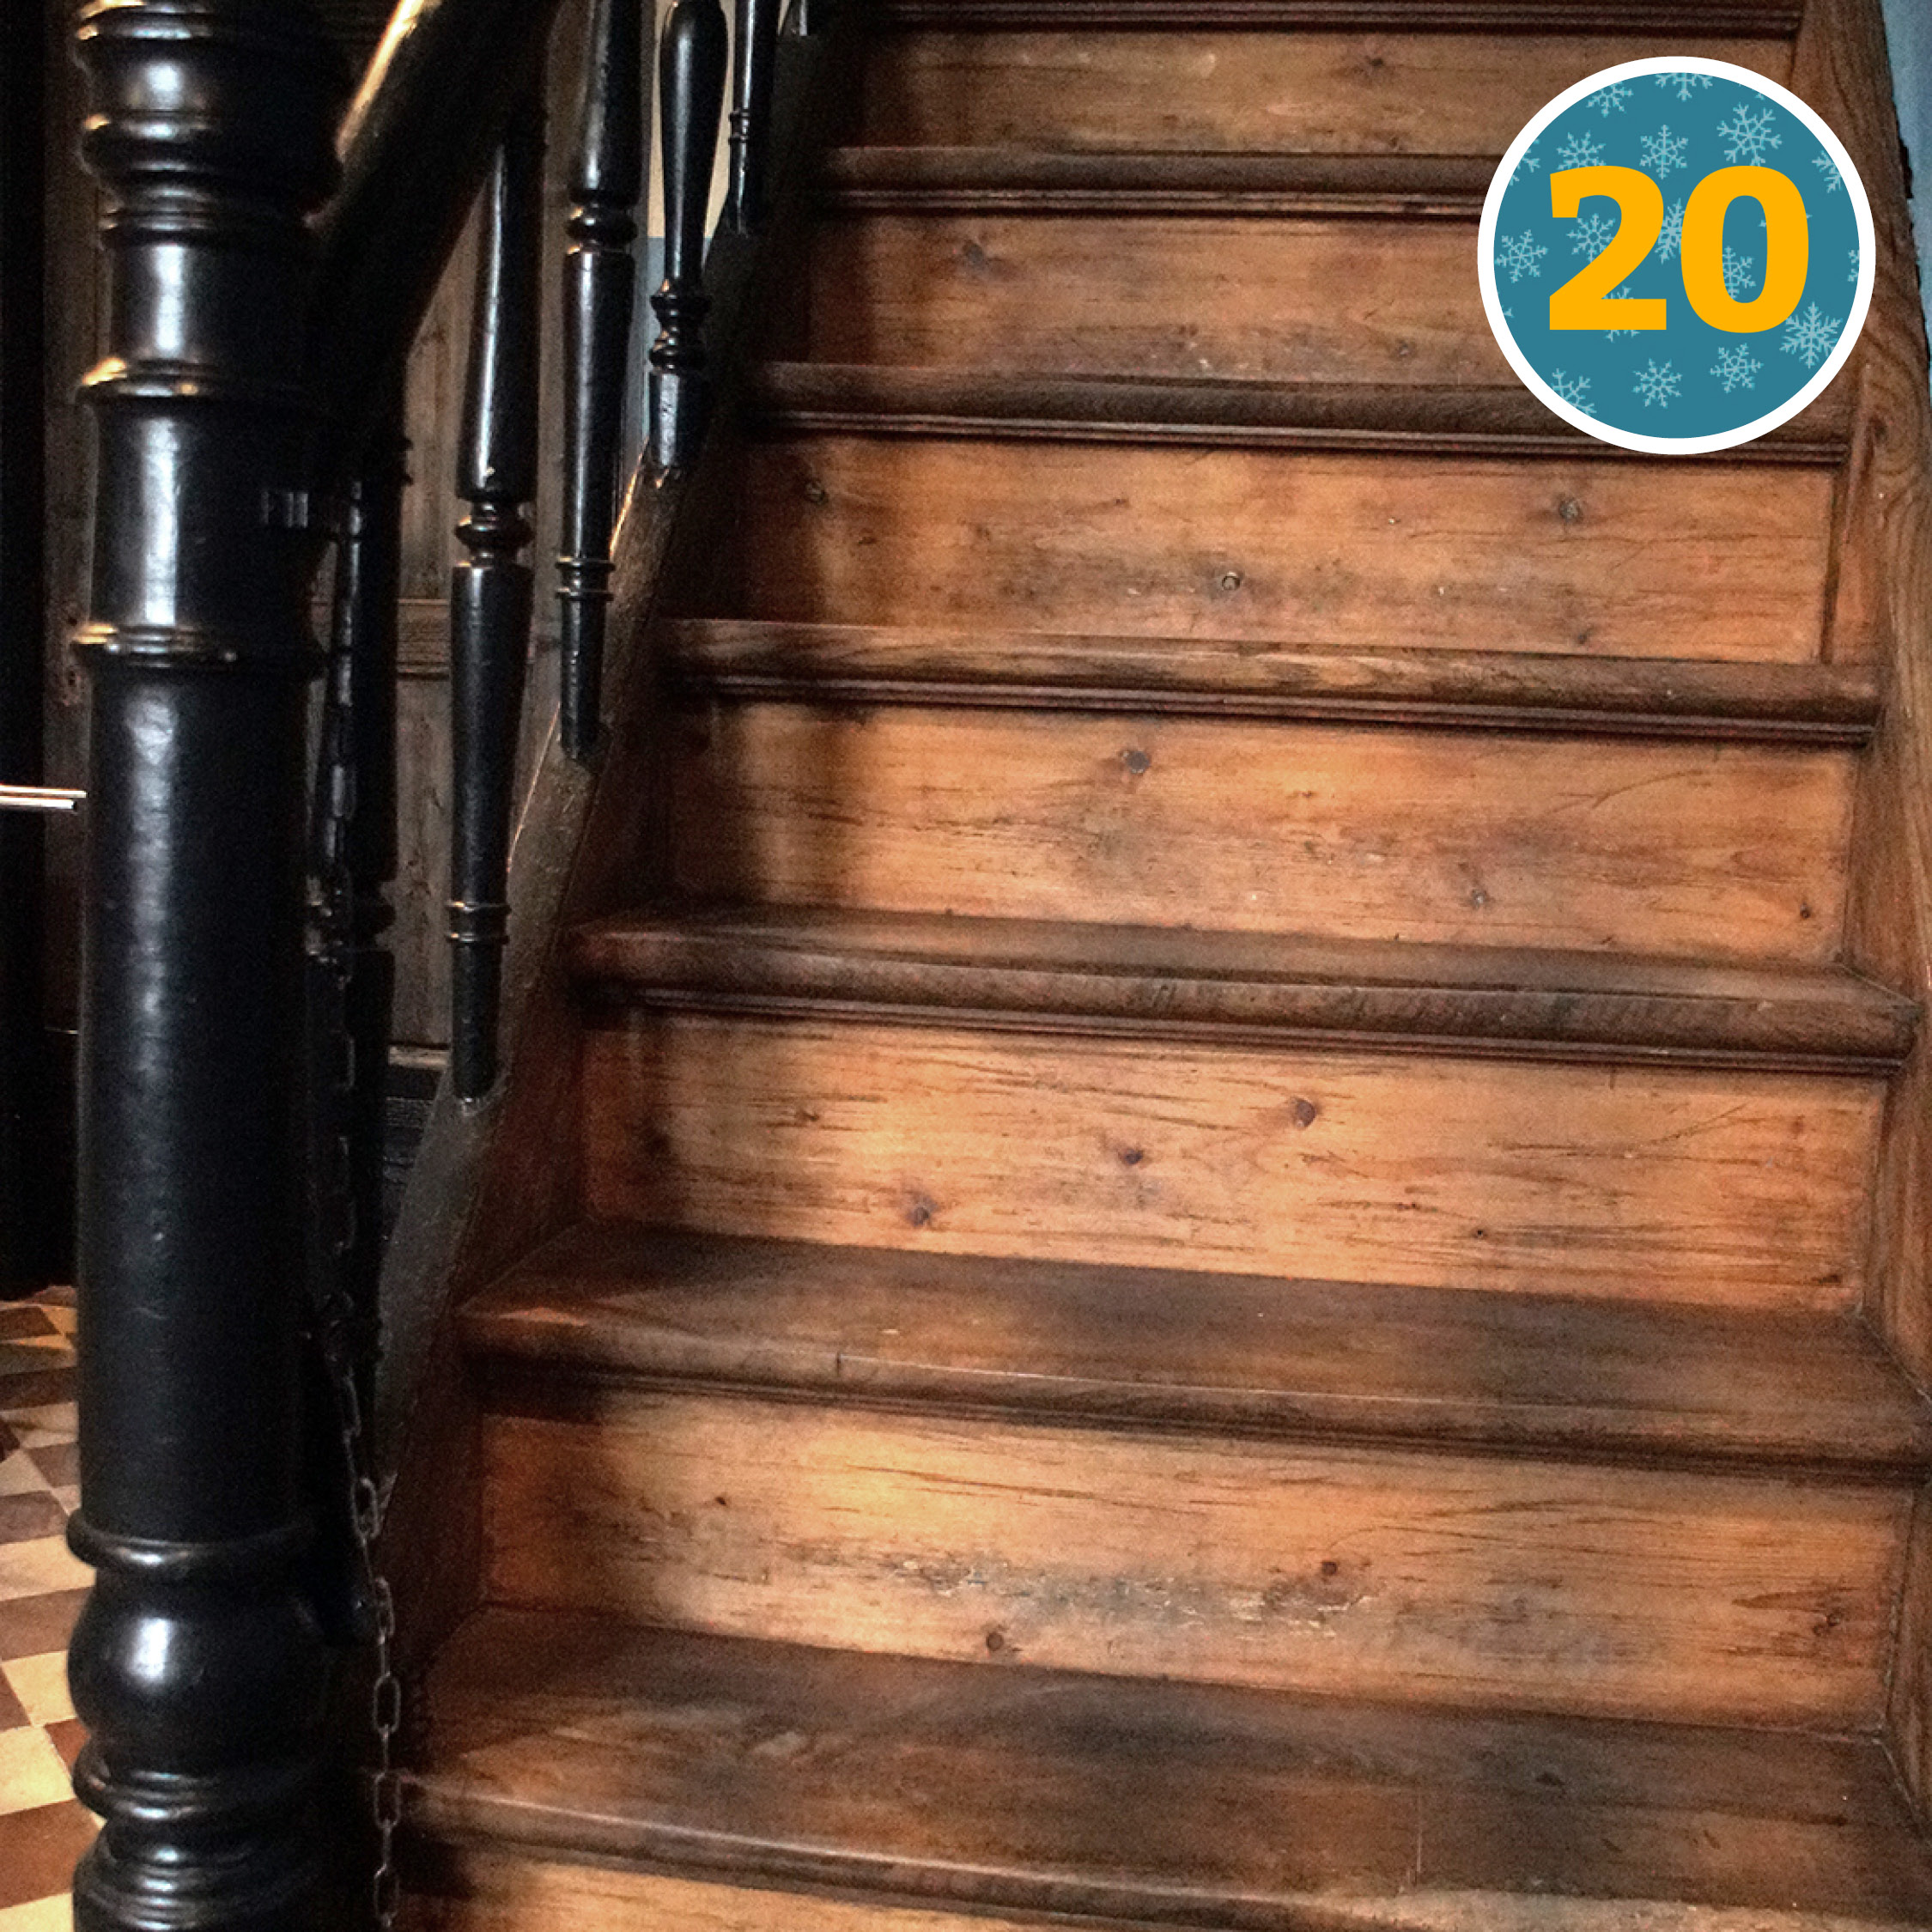 🧰 Diese alte Holztreppe im Eingangsbereich wurde im ersten Lockdown 2020 restauriert. Das Geländer wurde stabilisiert und die Treppenstufen wurden von einigen Lackschichten befreit. 🖌️ Anschließend wurde das Geländer in einem matten schwarz lackiert. Die restlichen Flächen und Stufen wurden geölt. Unter der Treppe befindet sich der Abgang in den Keller. 🤎 Die viele Jahrzehnte alte Holztreppe genießt Bestandsschutz.